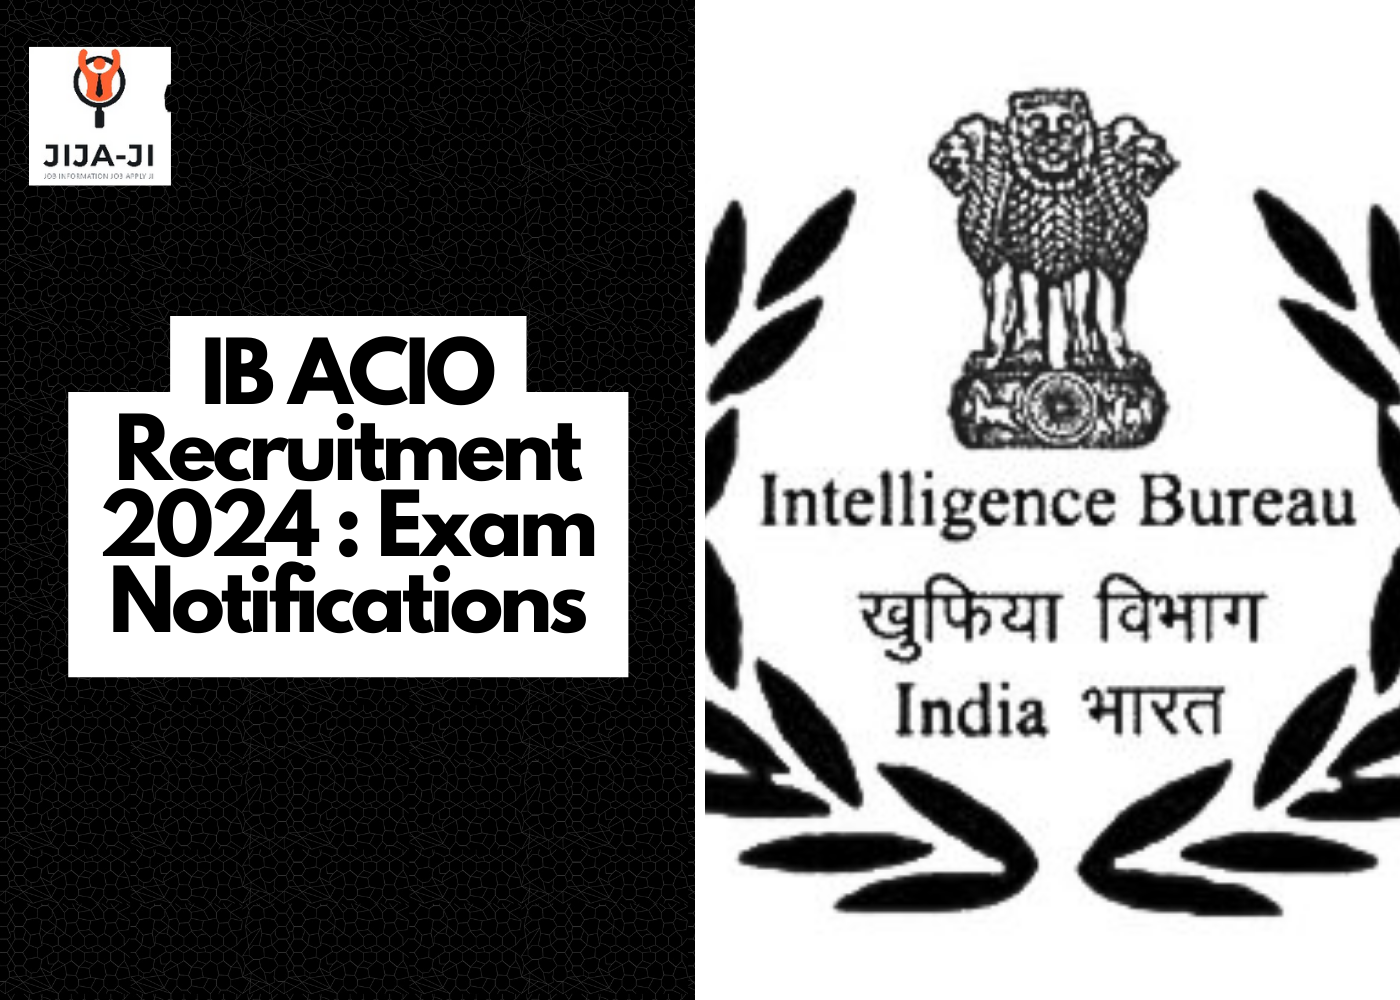 IB ACIO Recruitment 2024 : Exam Notifications